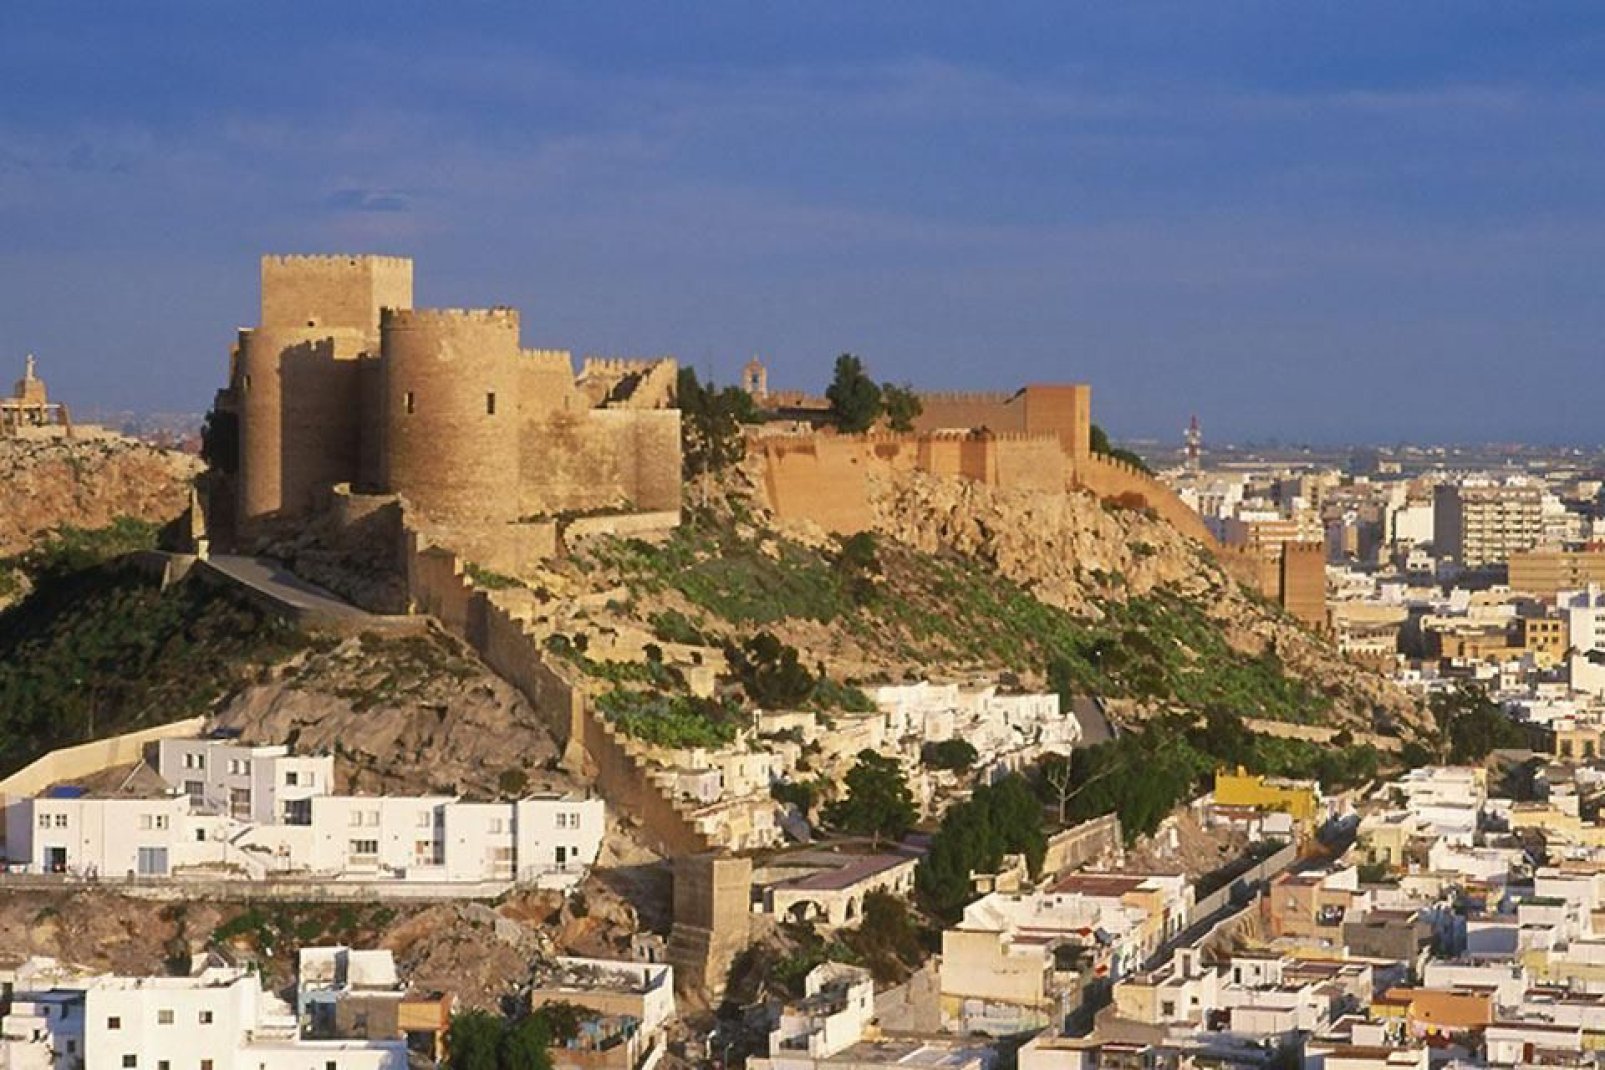 Diese Festung aus dem 13. Jahrhundert ist die größte von ganz Andalusien. Die eindrucksvollen Mauern und herrlichen Gärten sind besonders sehenswert.